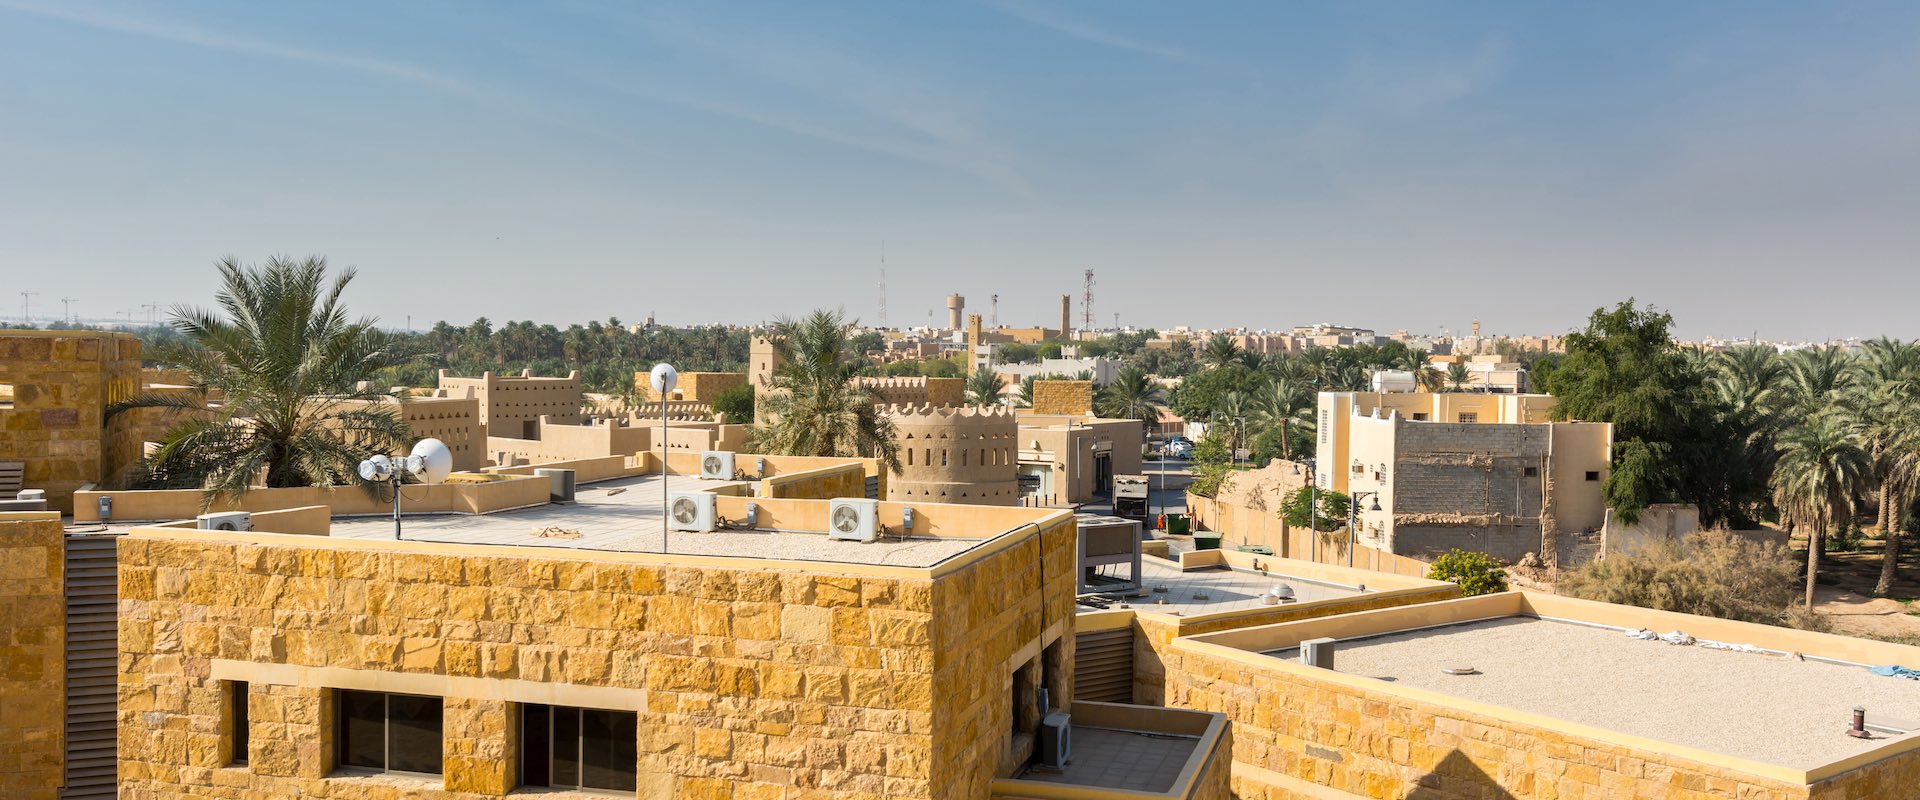 MLC Awarded four new hotels at Diriyah Gate Development in Riyadh